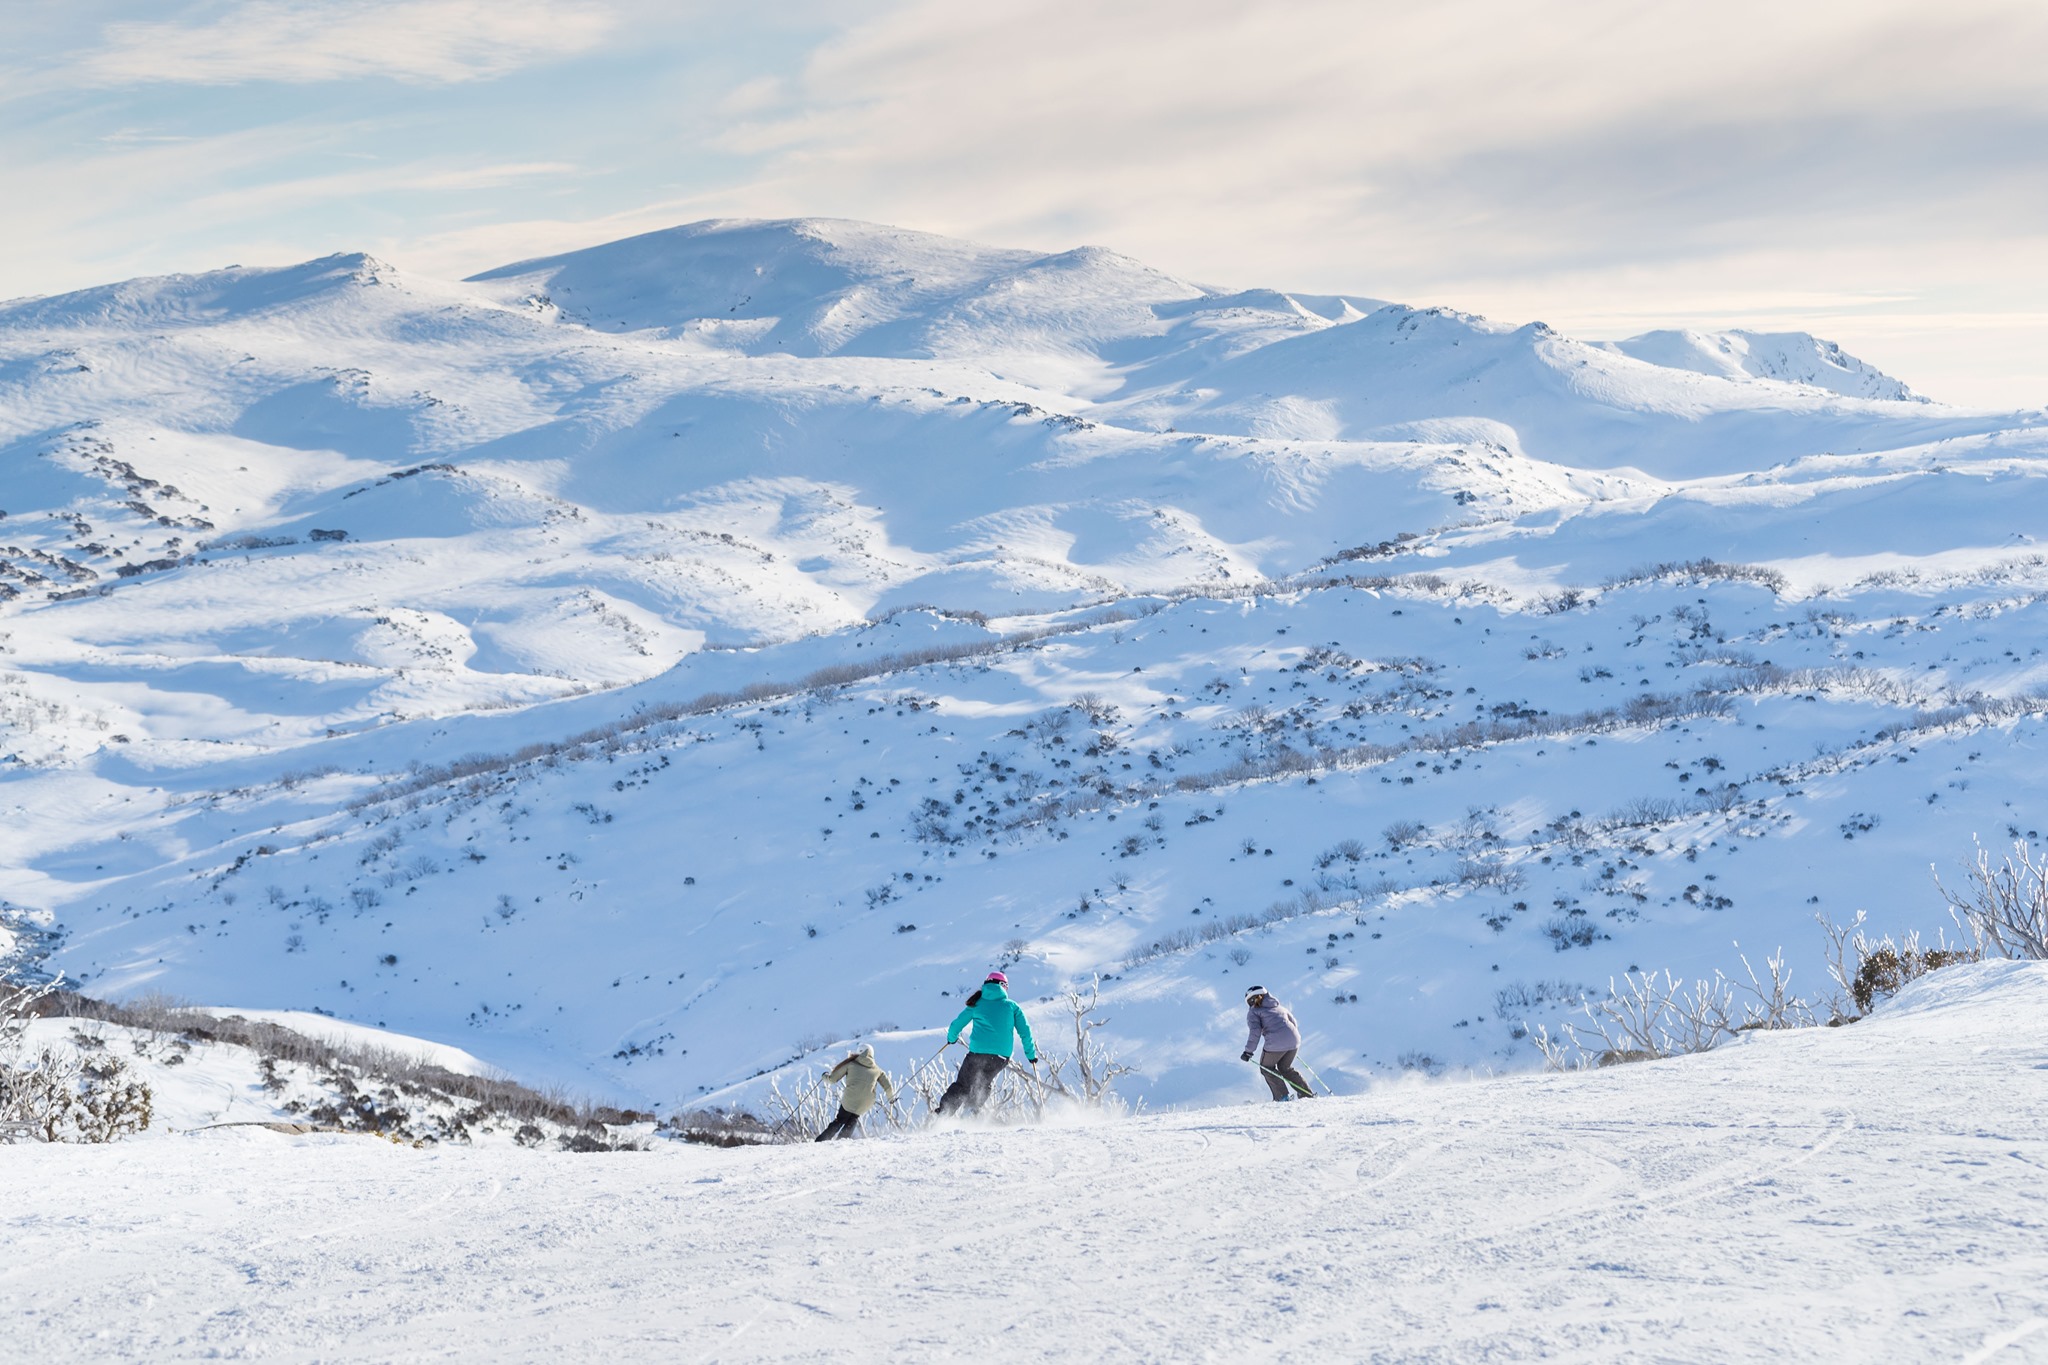 迎接滑雪季，新州热门滑雪场Perisher将在本周末开放